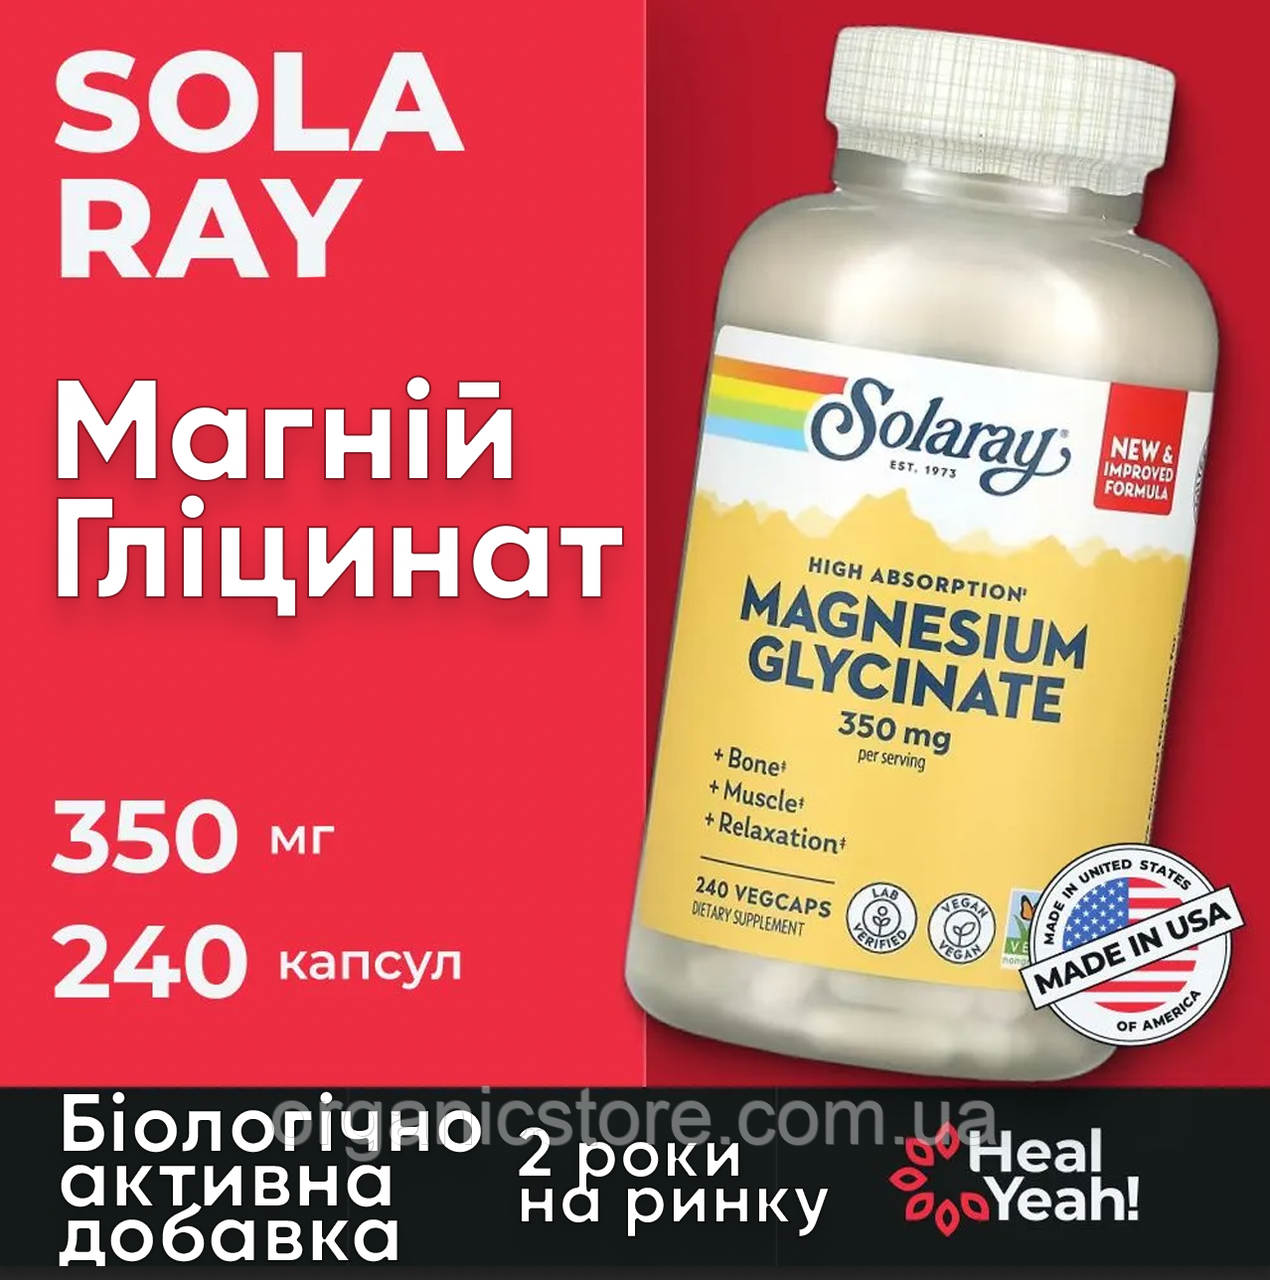 Гліцинат магнію з високою засвоюваністю, Solaray, 350 мг, 240 вегетаріанських капсул